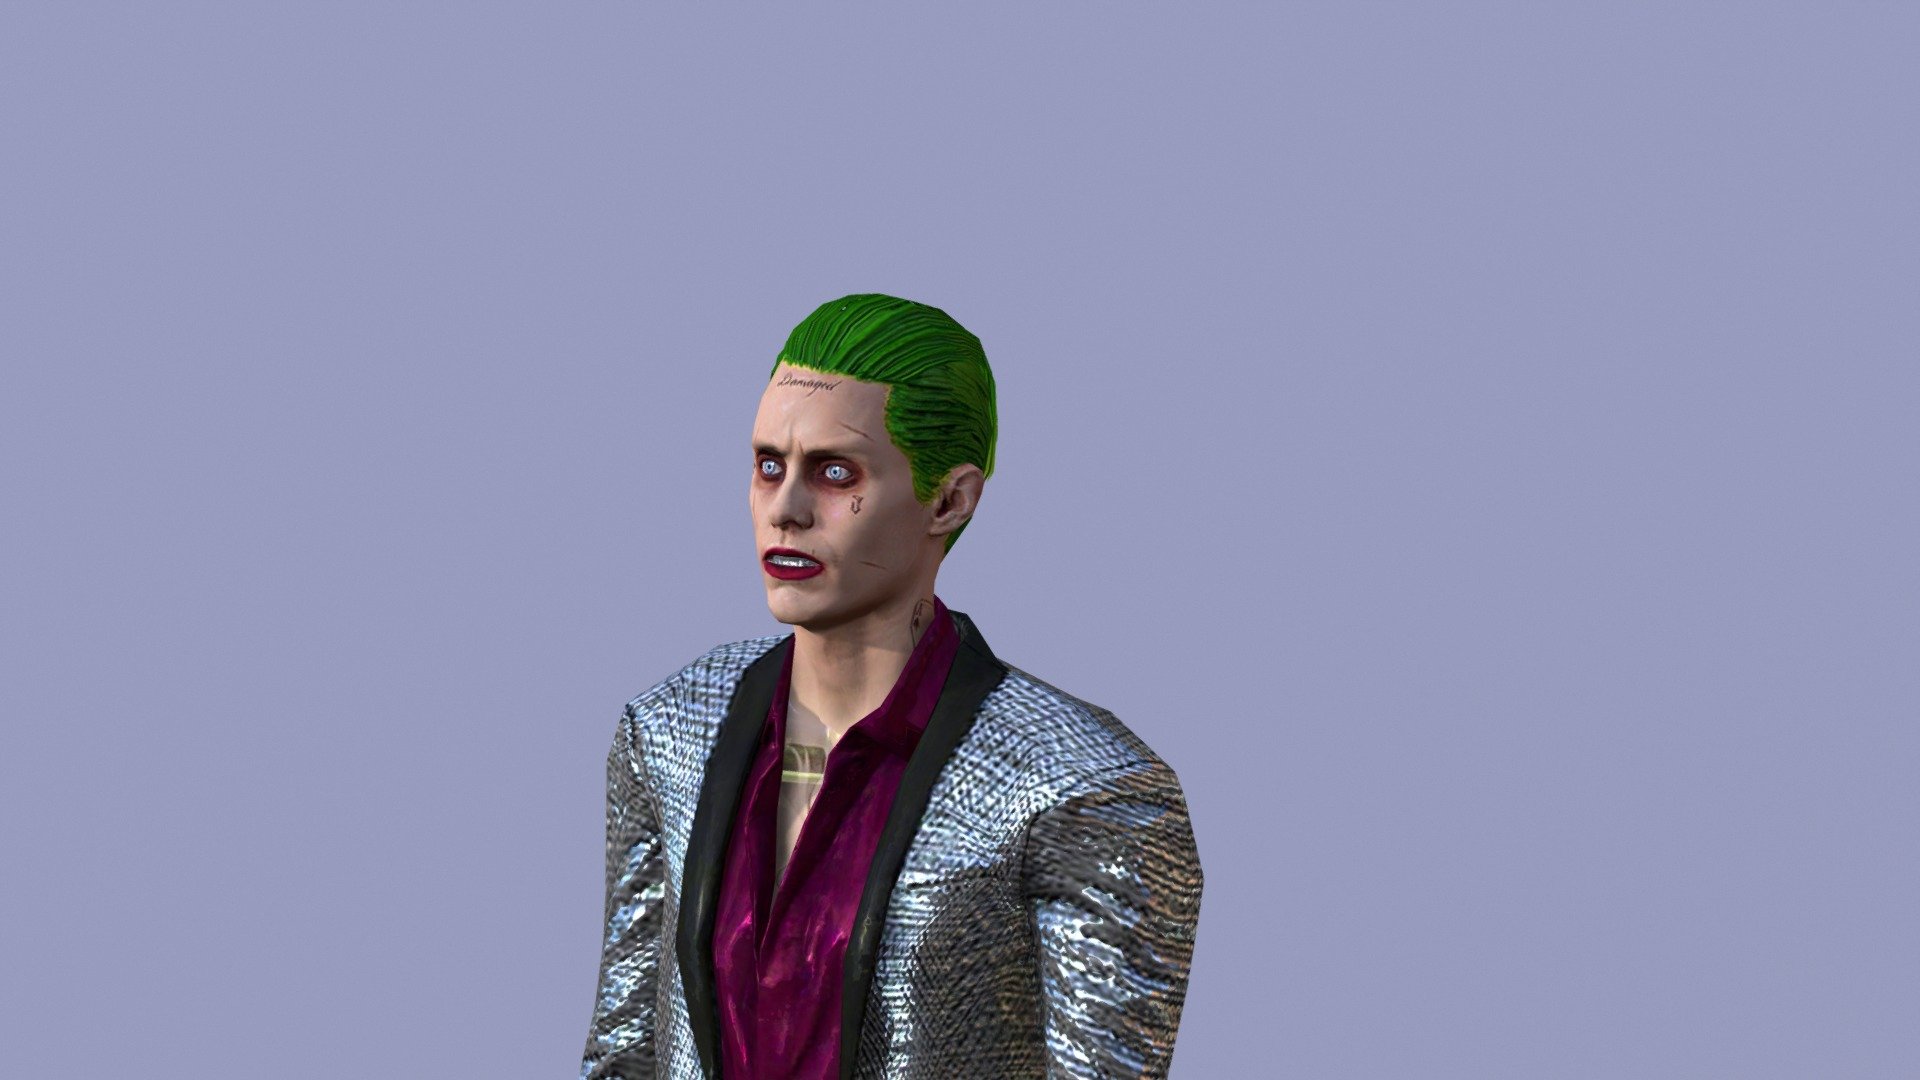 Joker - 3D model by klimentinandreeski 3d model